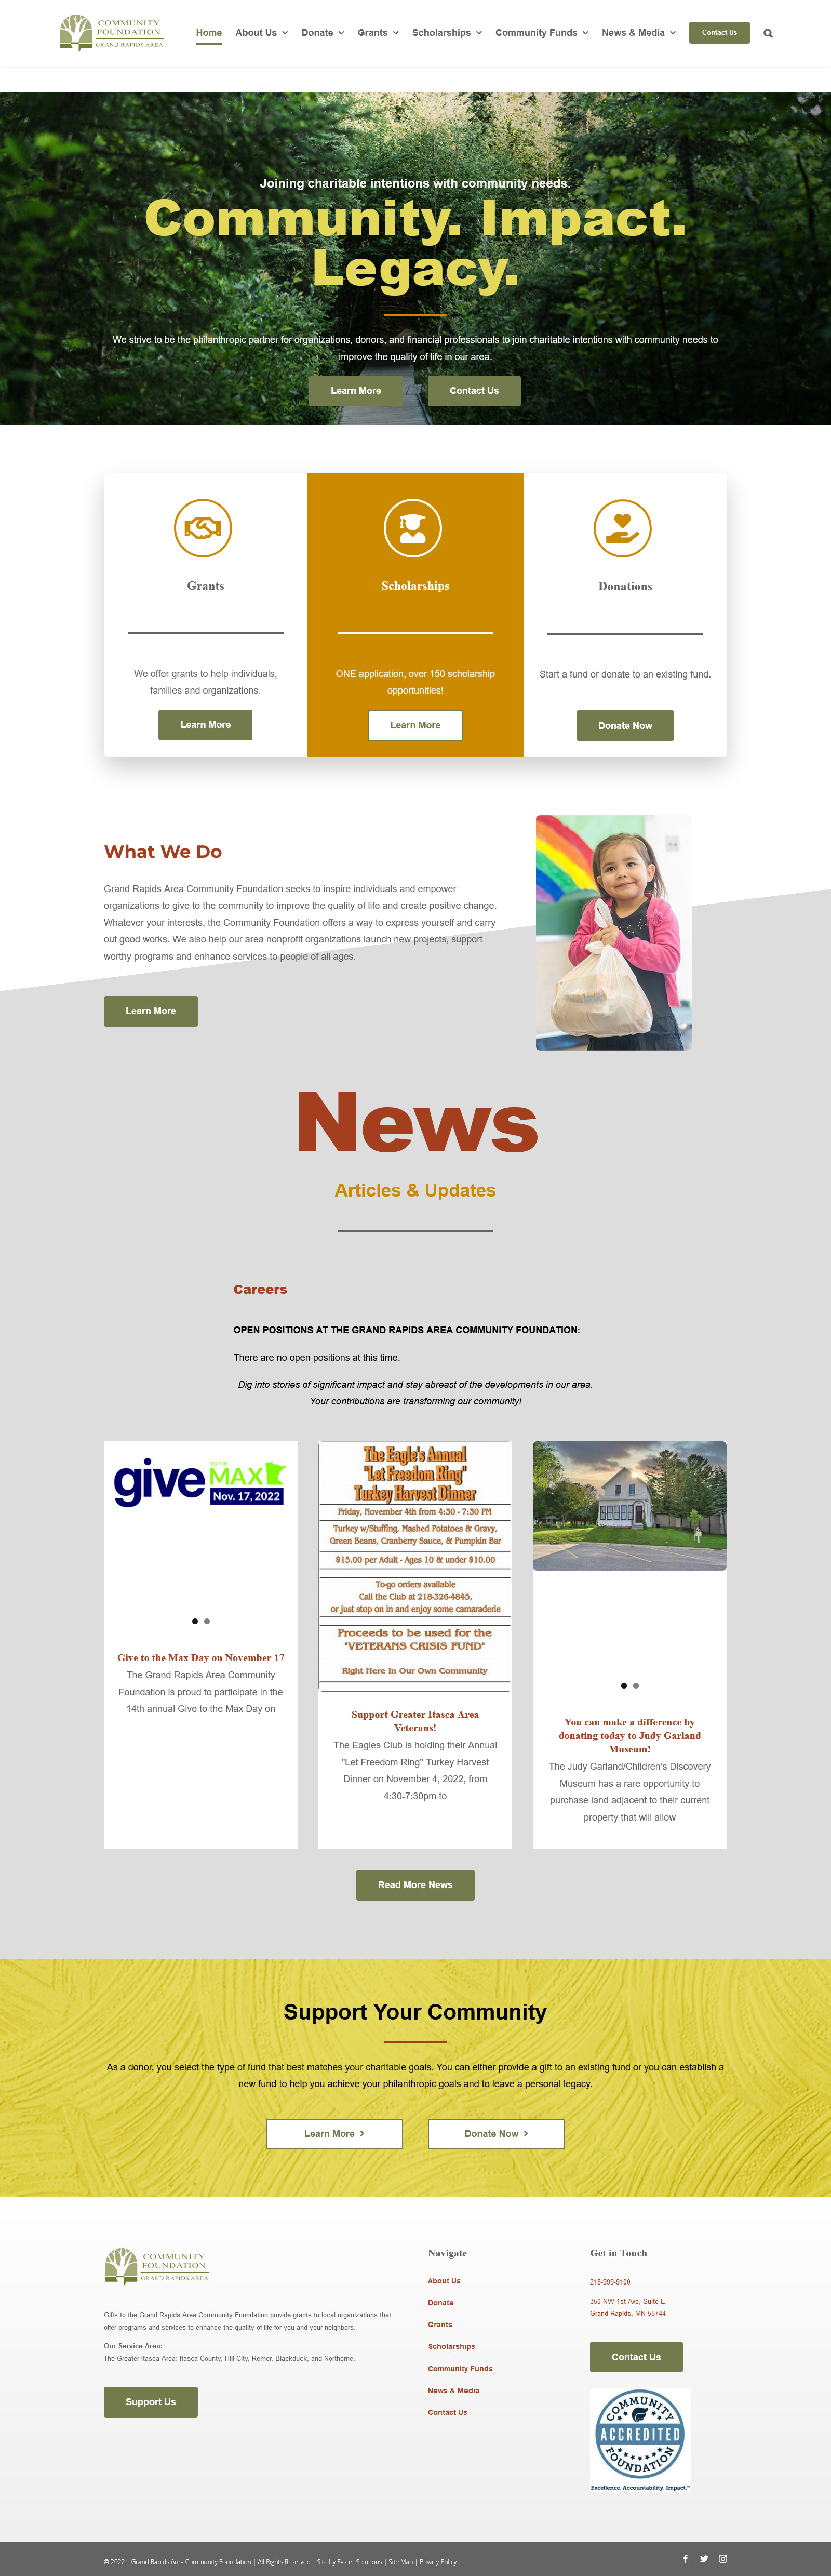 Grand Rapids Area Community Foundation - Desktop